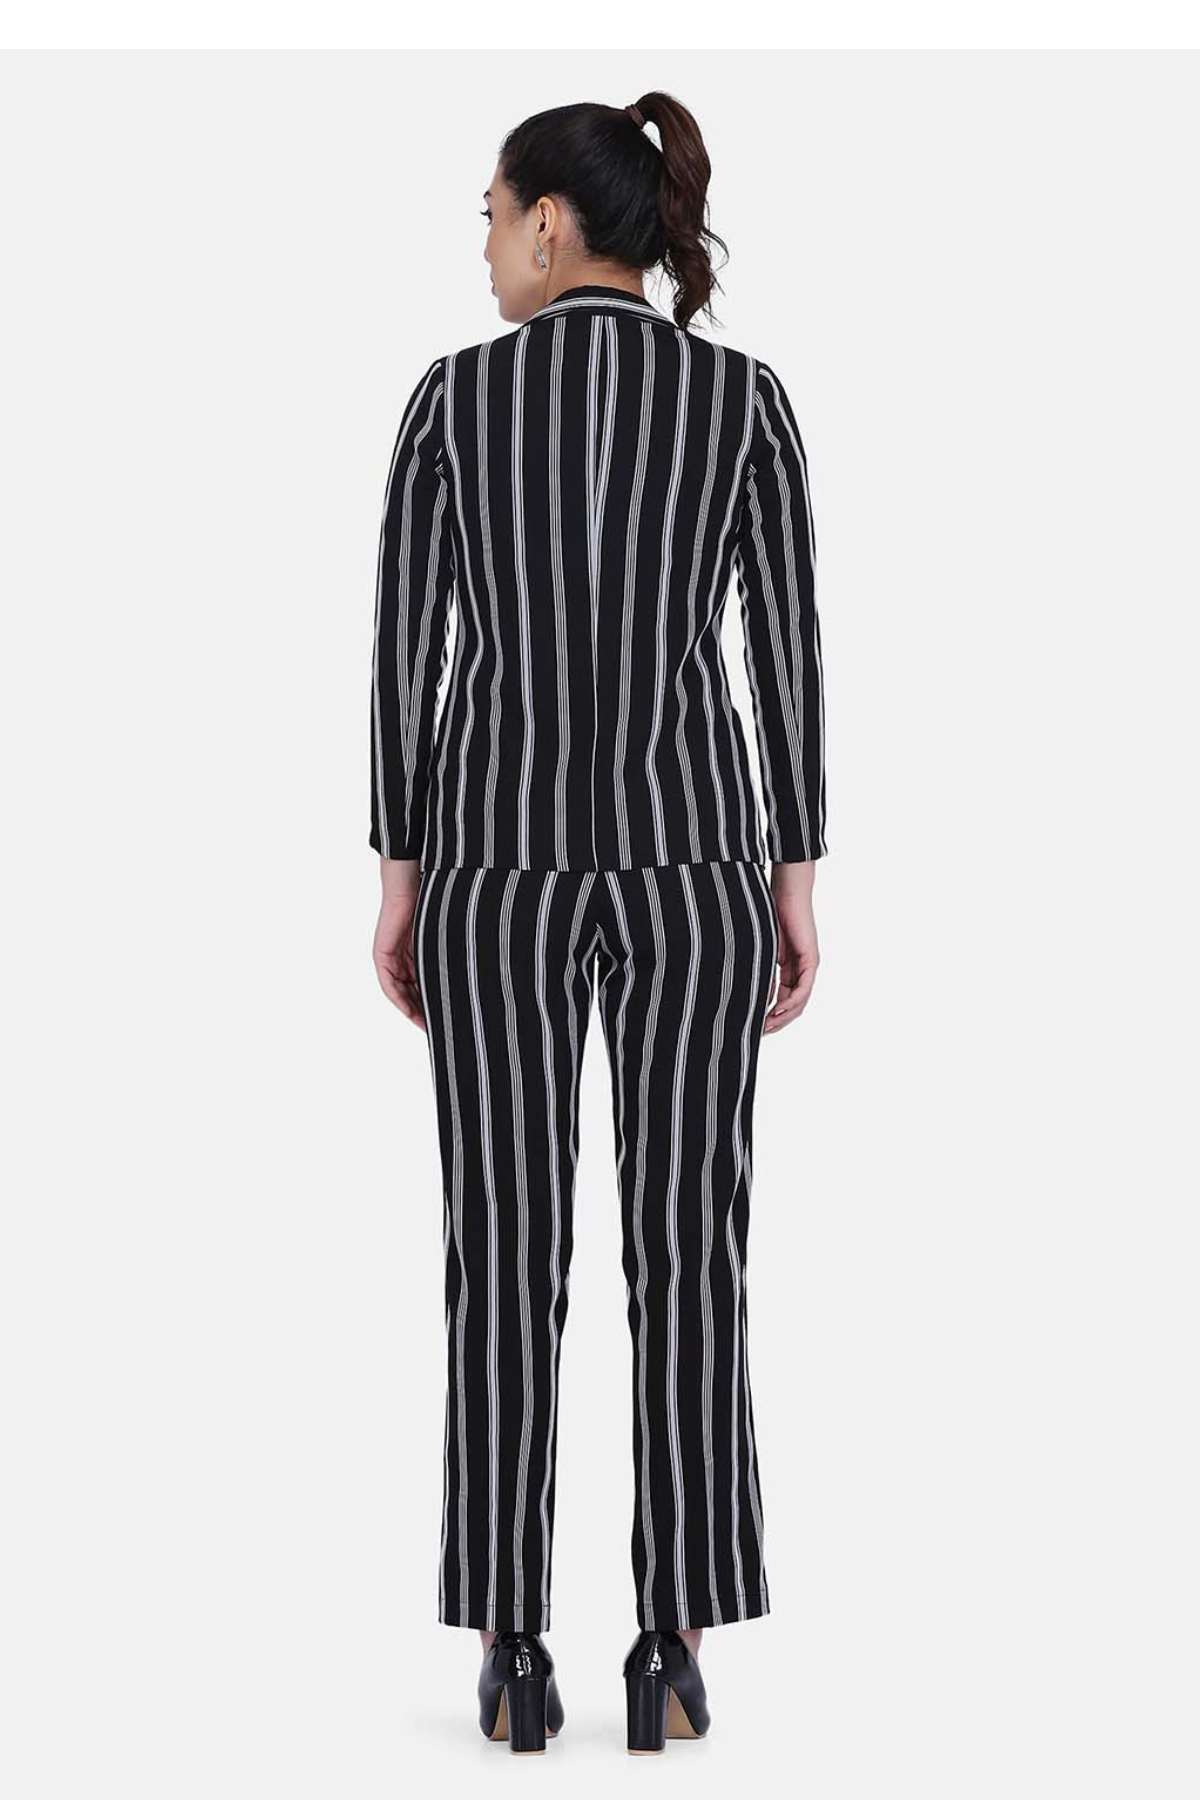 Striped Pant Suit